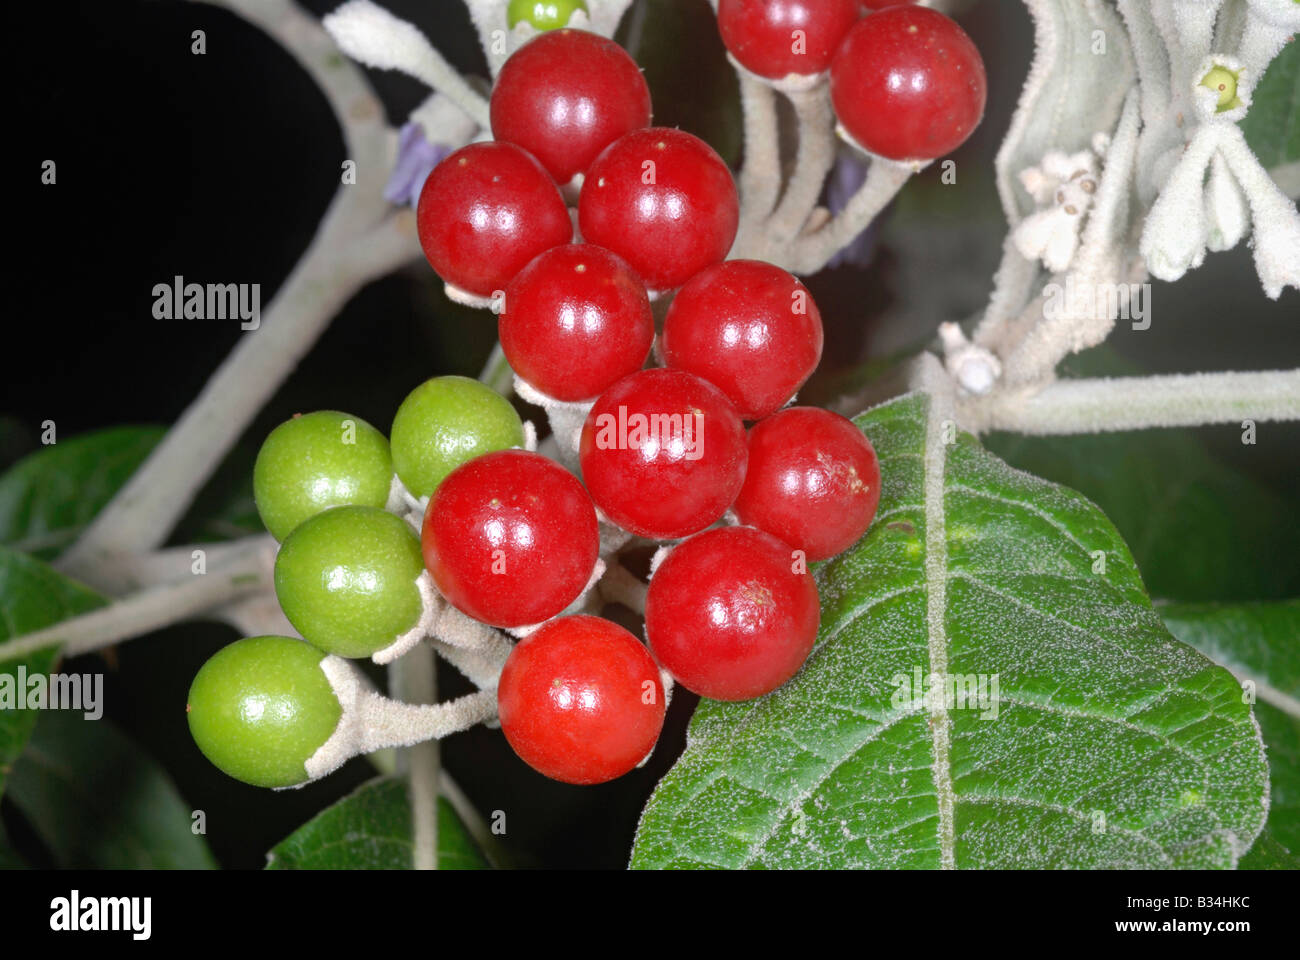 Die reifen Früchte einer Art Solanum. Dieser Strauch wächst in offene und Abfallentsorgung Land in Teilen der Wastern Ghats. Stockfoto